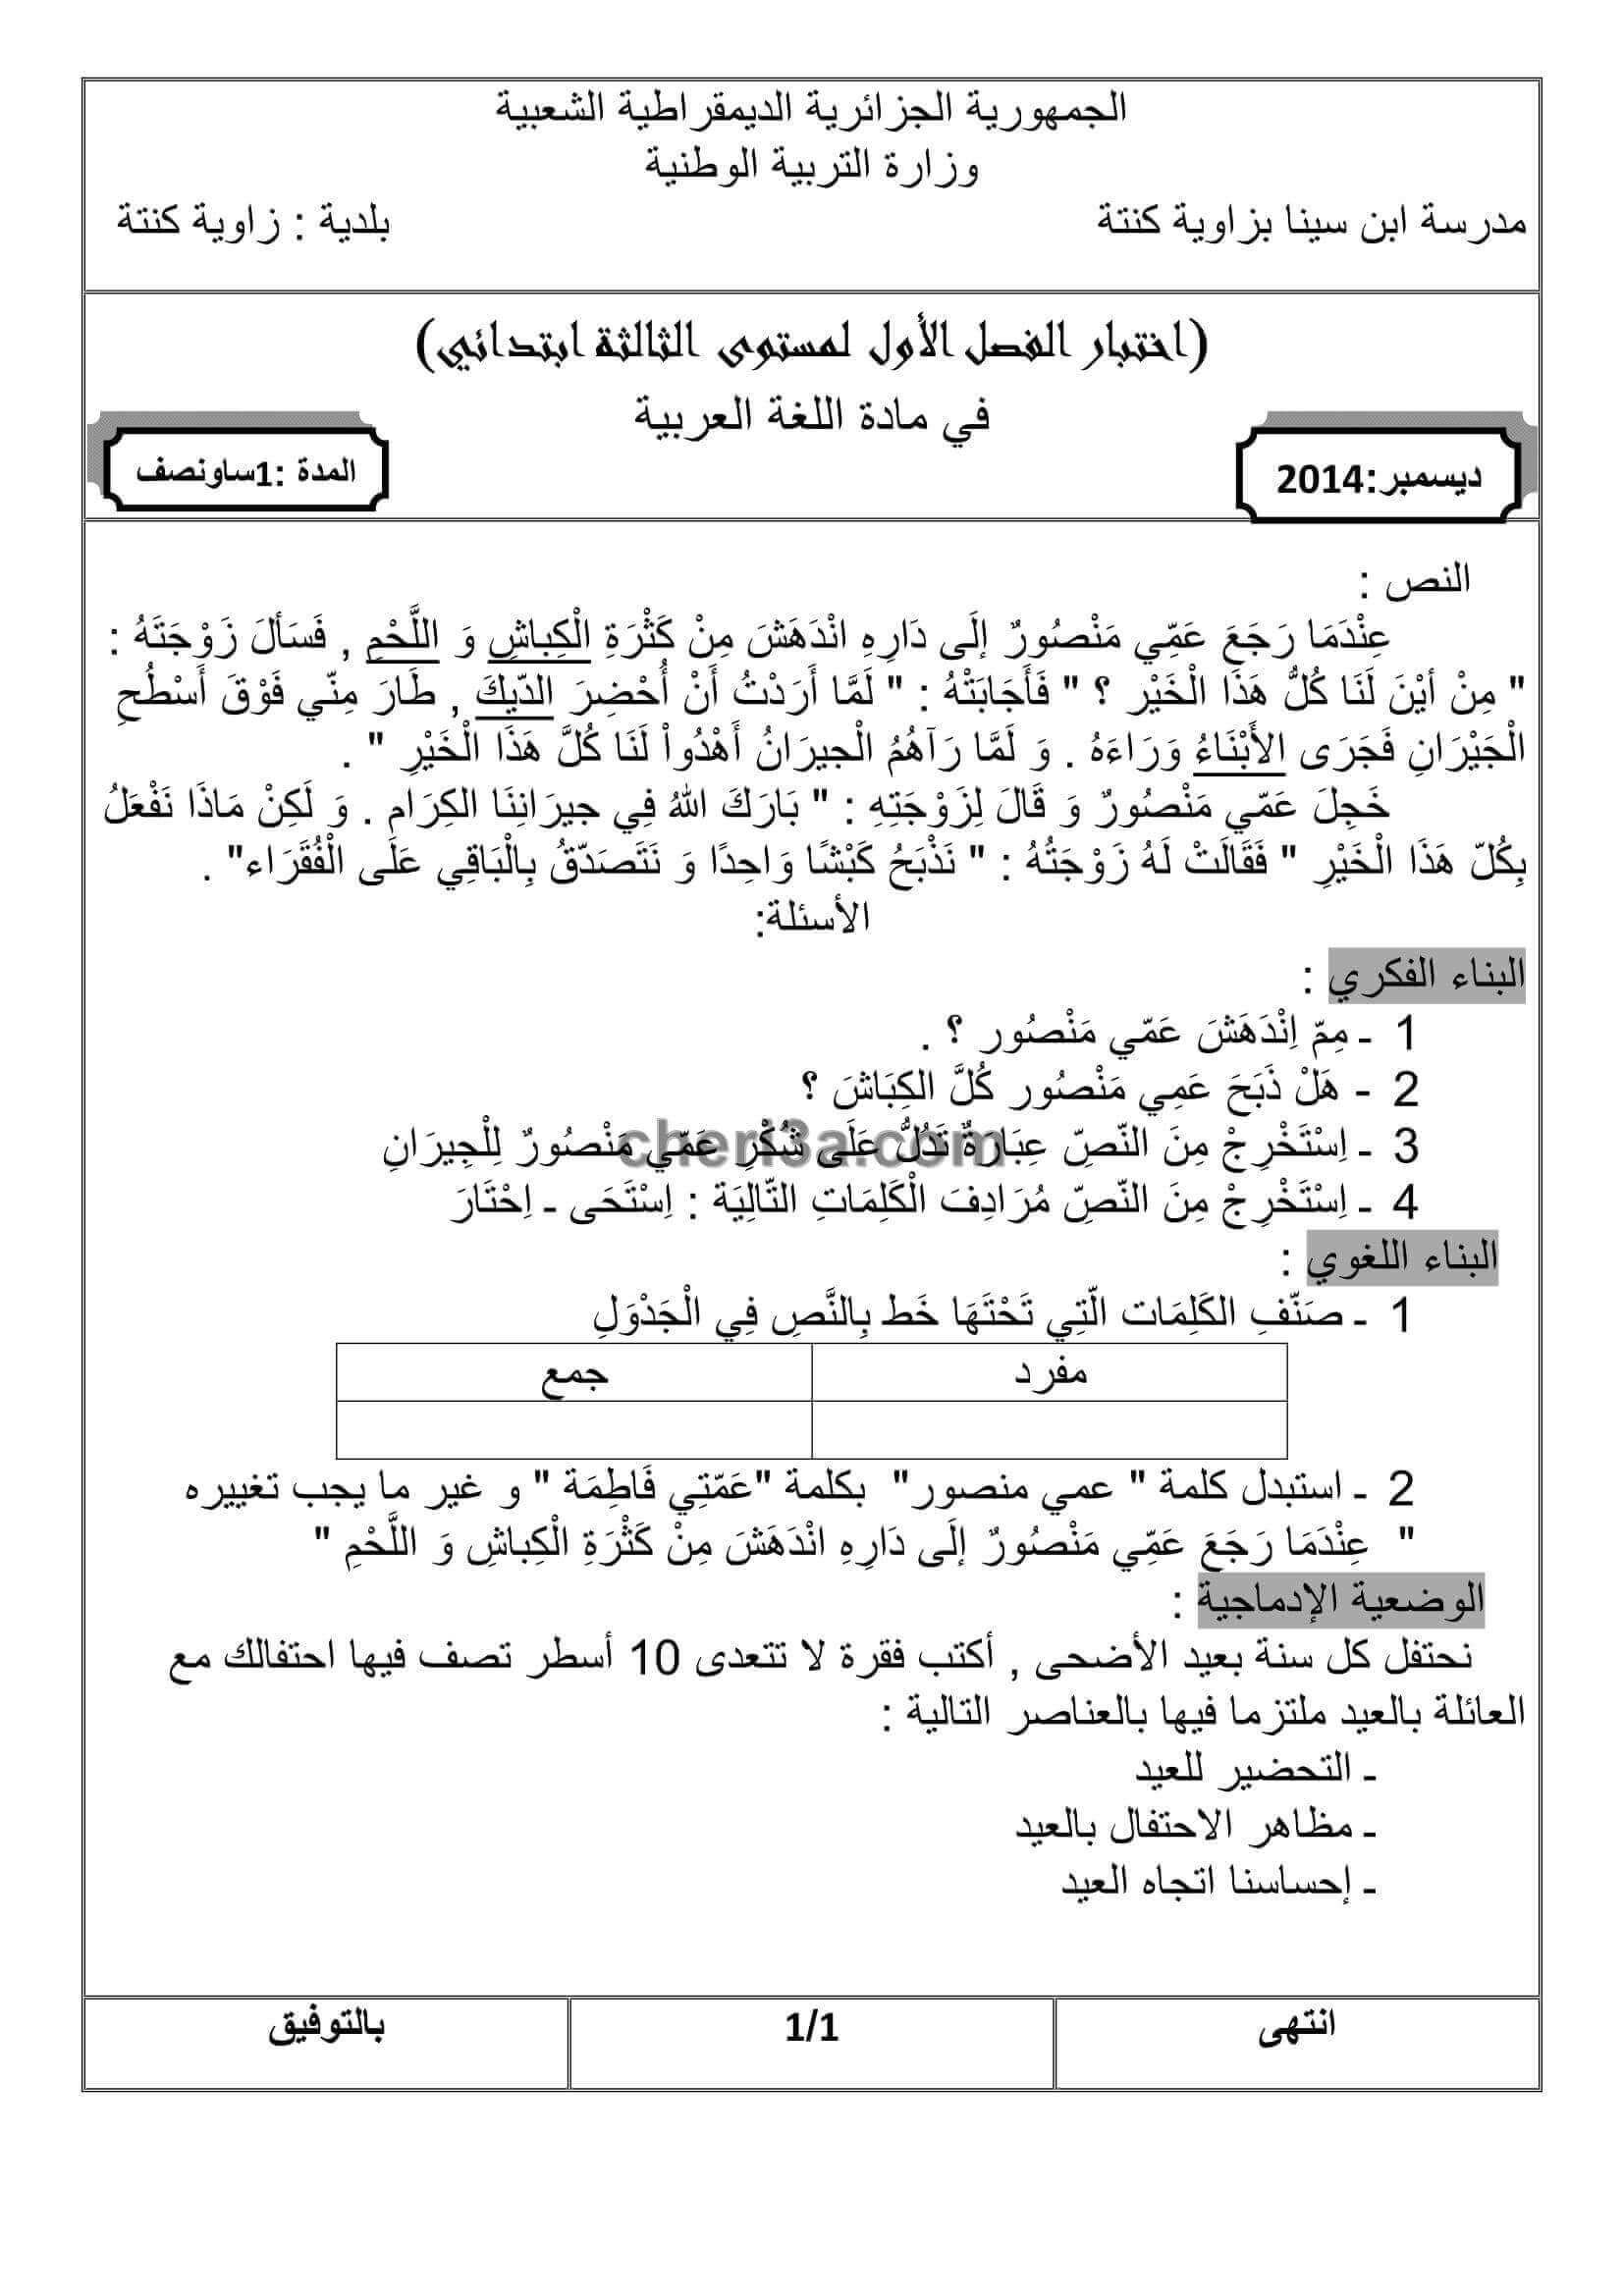 اختبار الفصل الاول للسنة الثالثة ابتدائي في مادة اللغة العربية. 